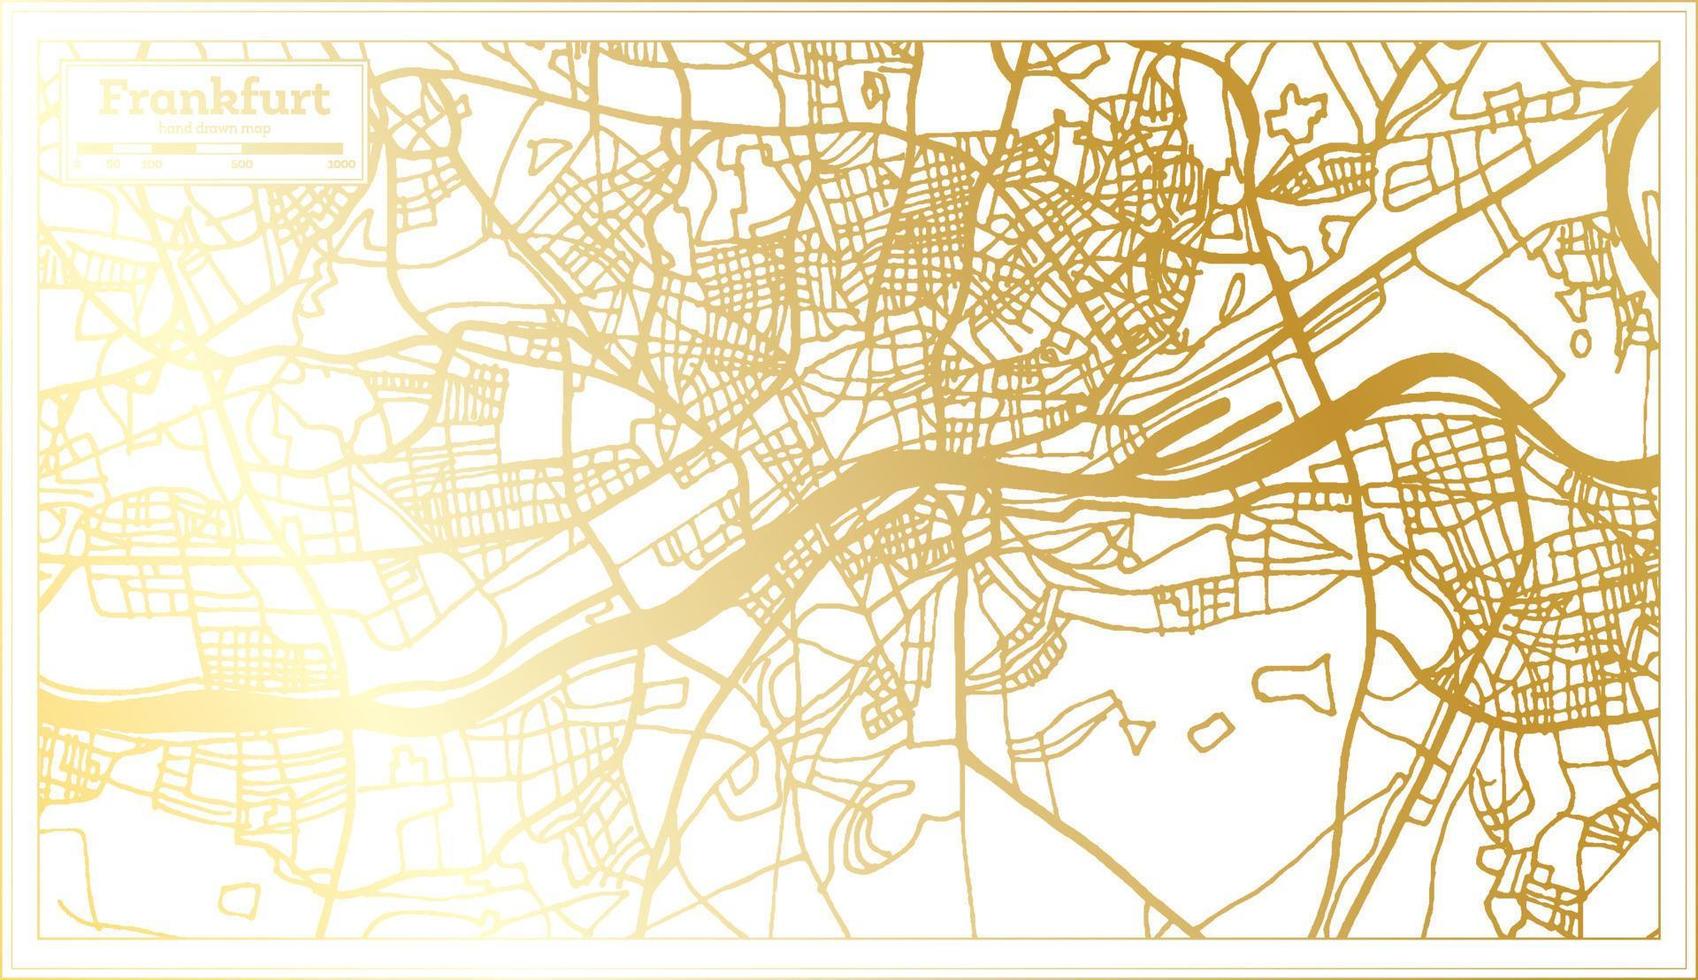 Frankfurt Duitsland stad kaart in retro stijl in gouden kleur. schets kaart. vector